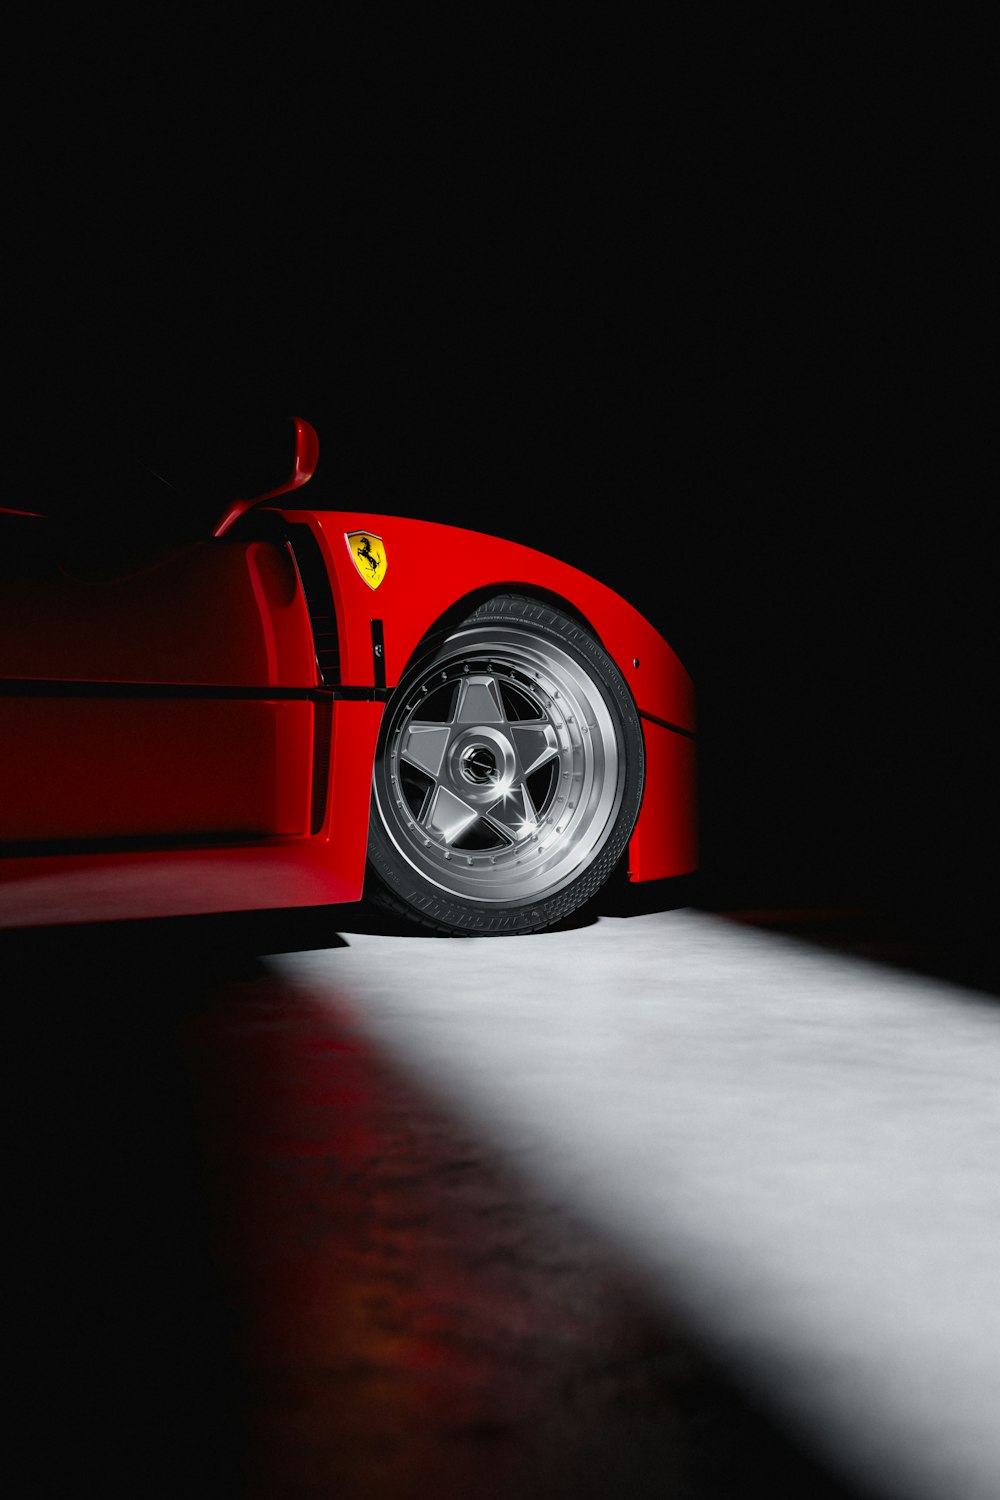 Un deportivo rojo estacionado en la oscuridad